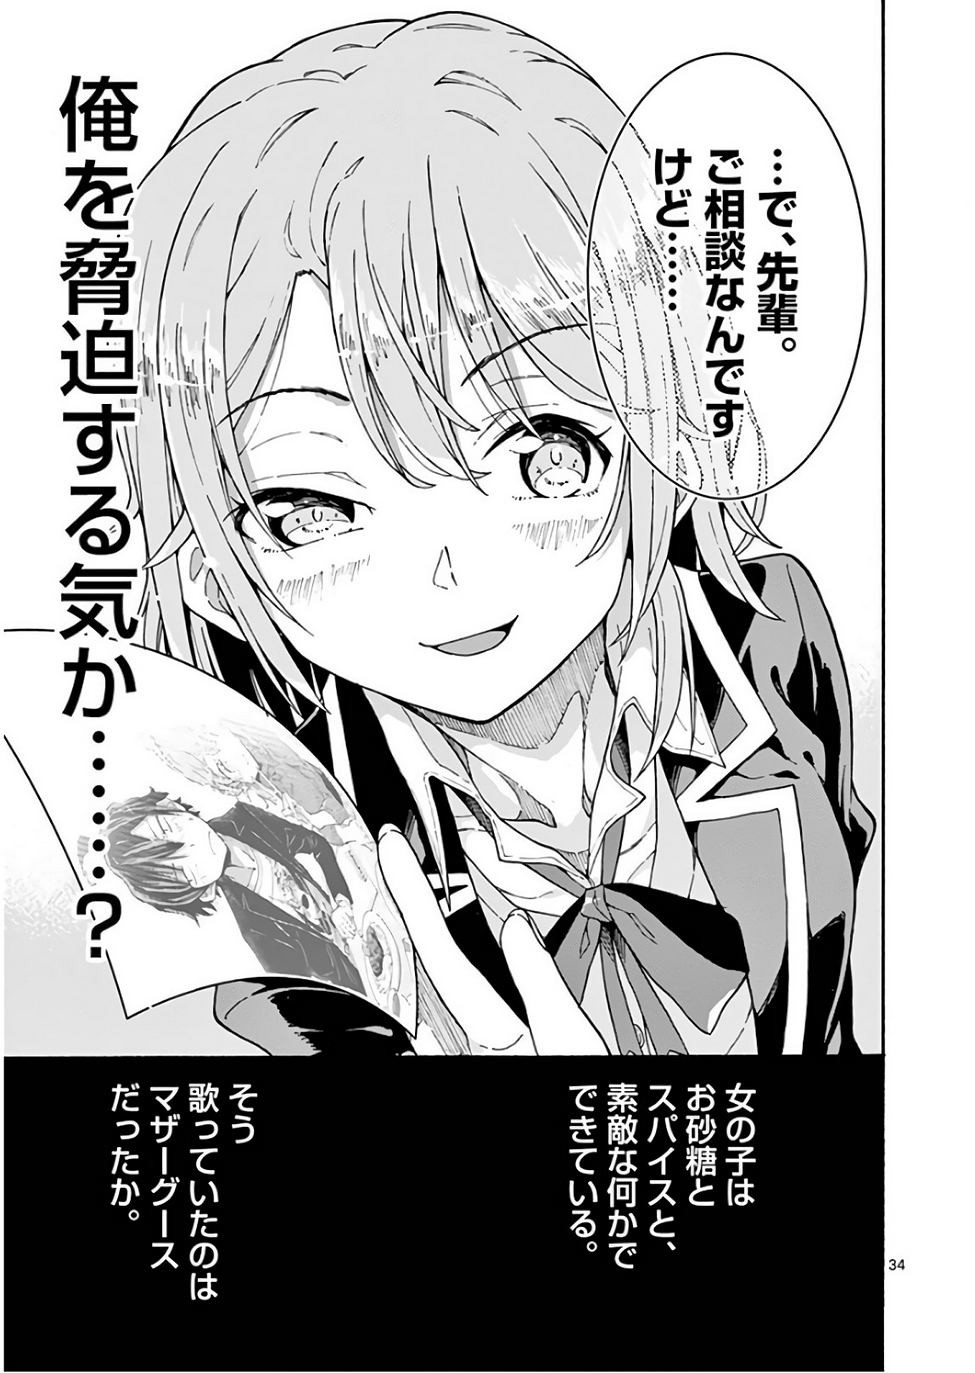 Yahari Ore no Seishun Rabukome wa Machigatte Iru. @ Comic - Chapter 71 - Page 37